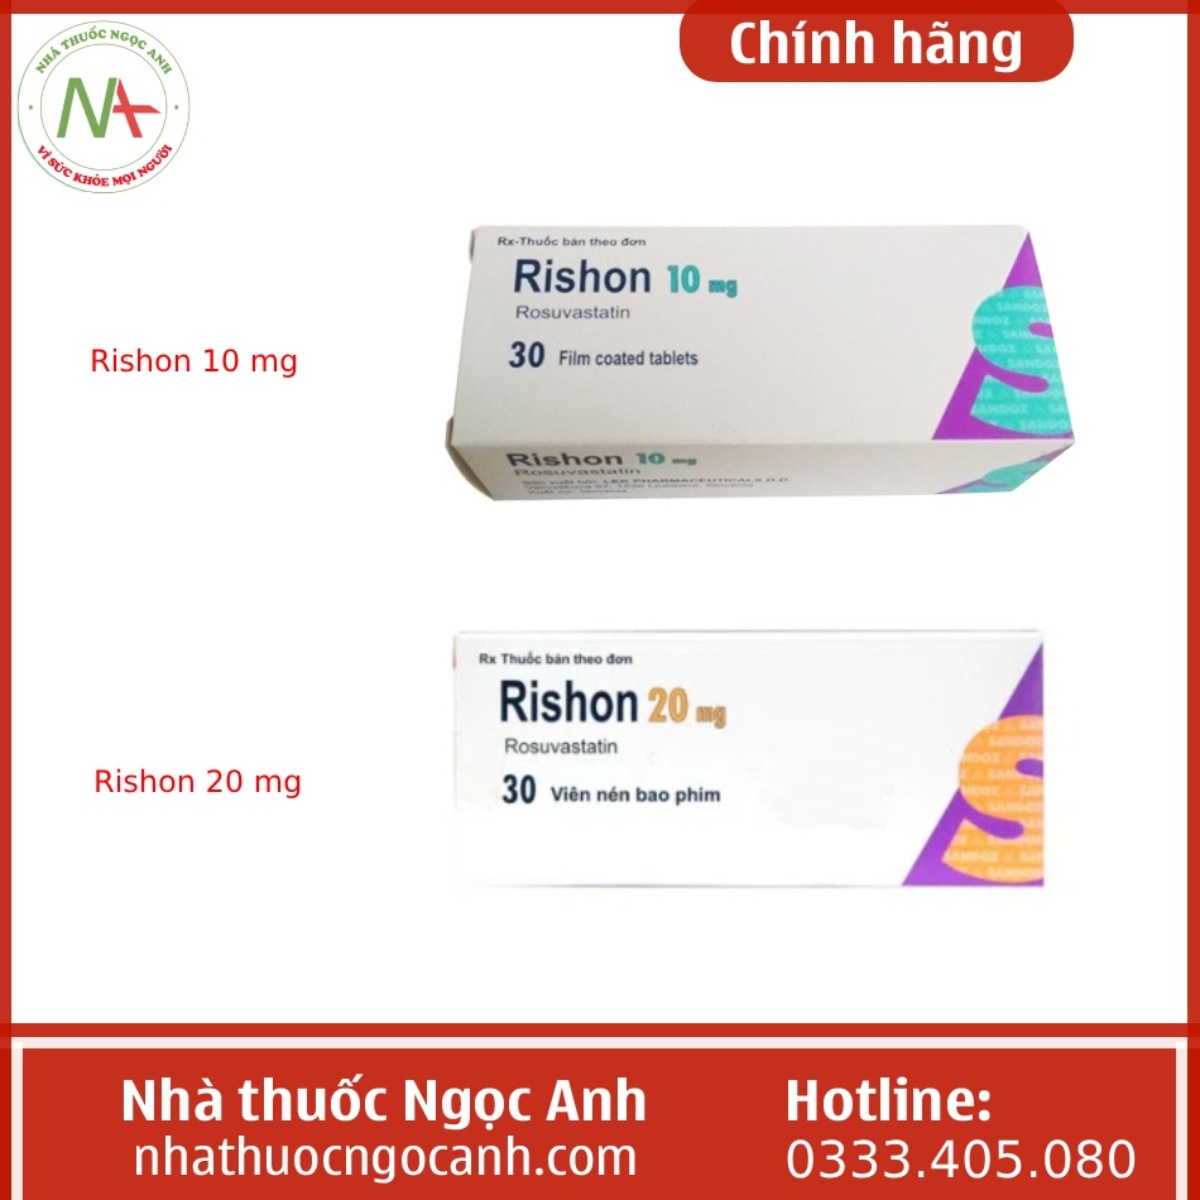 Rishon 10 mg và Rishon 20 mg